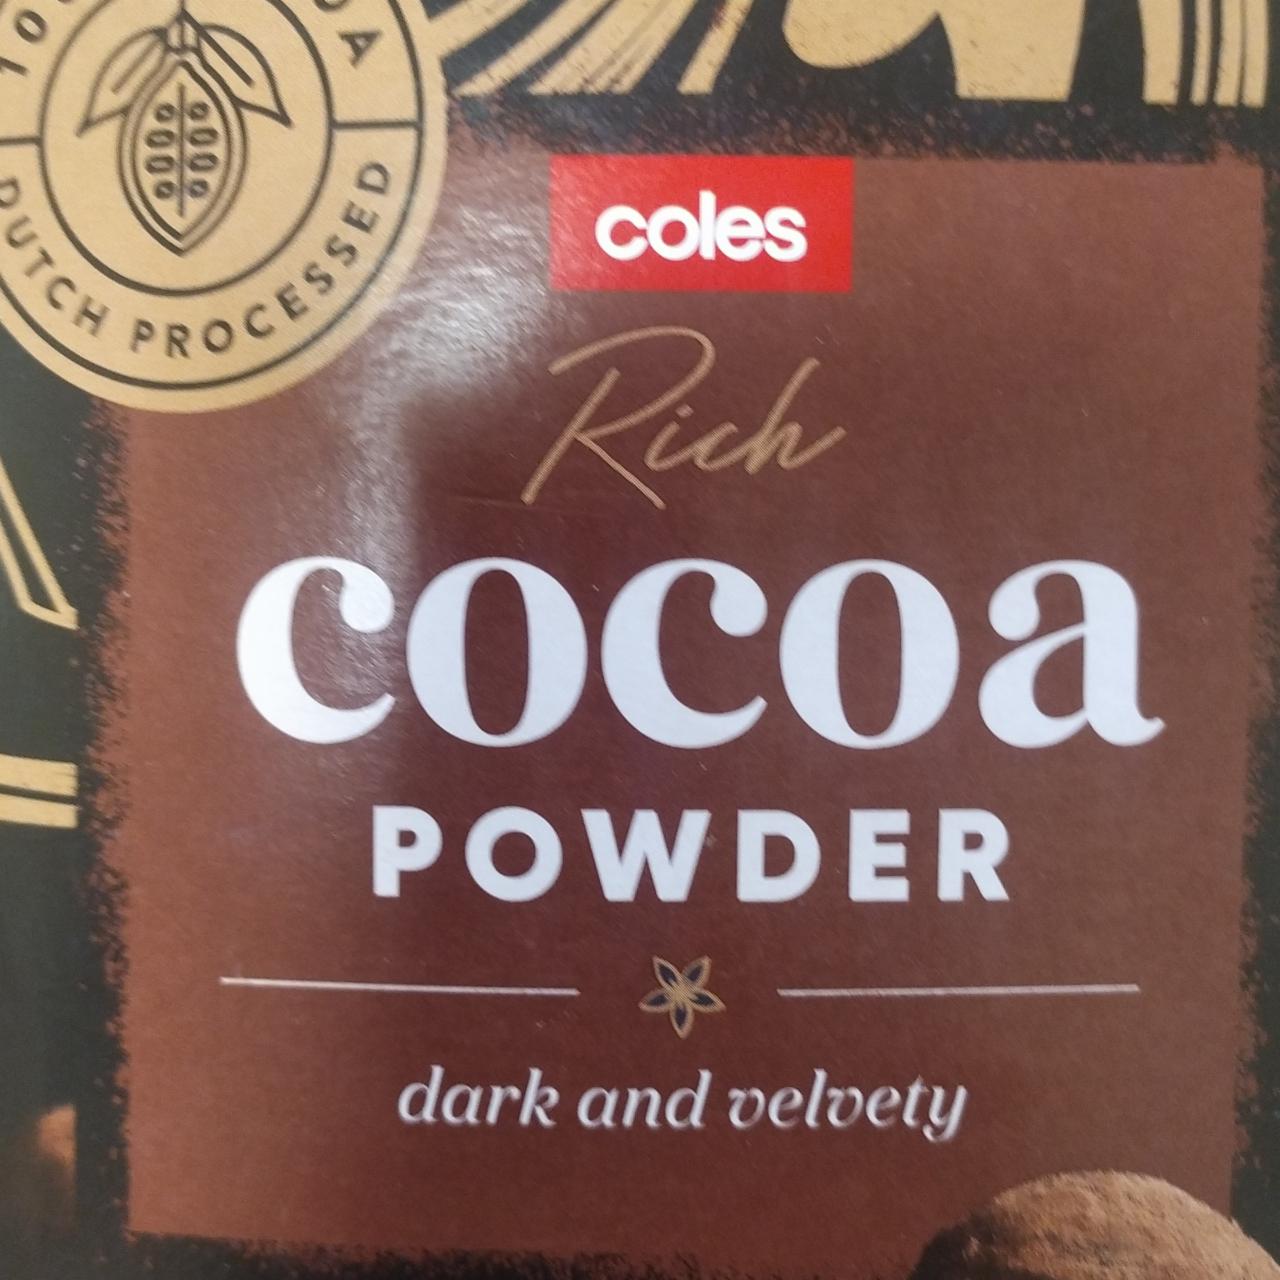 Fotografie - Rich cocoa powder Coles